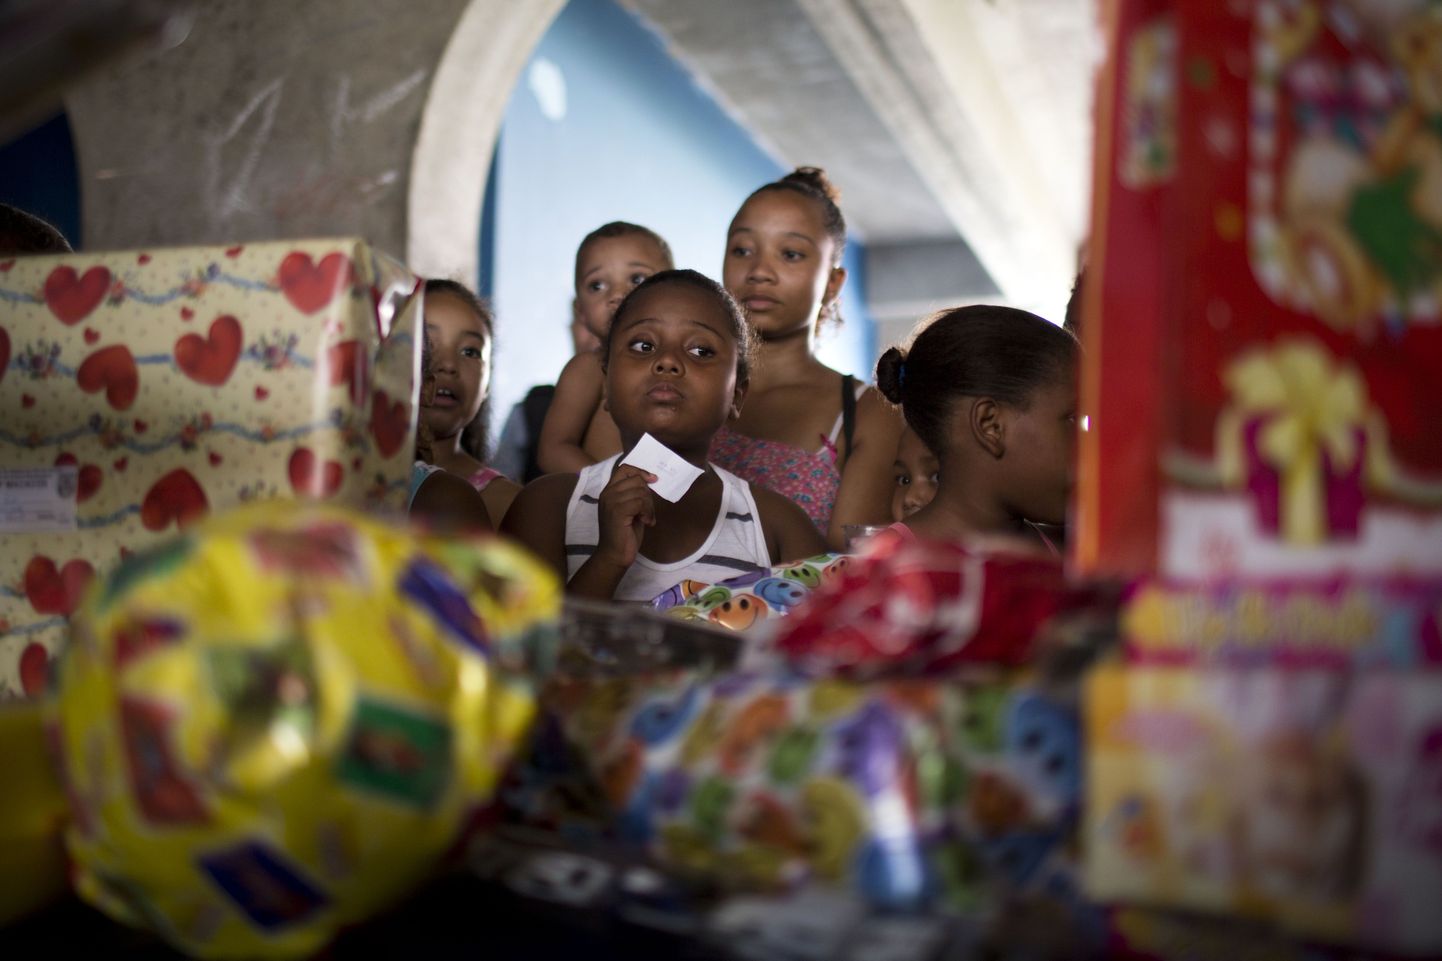 Brasiilia lapsed kinke ootamas Rio de Janeiro politsei jõulupeol.